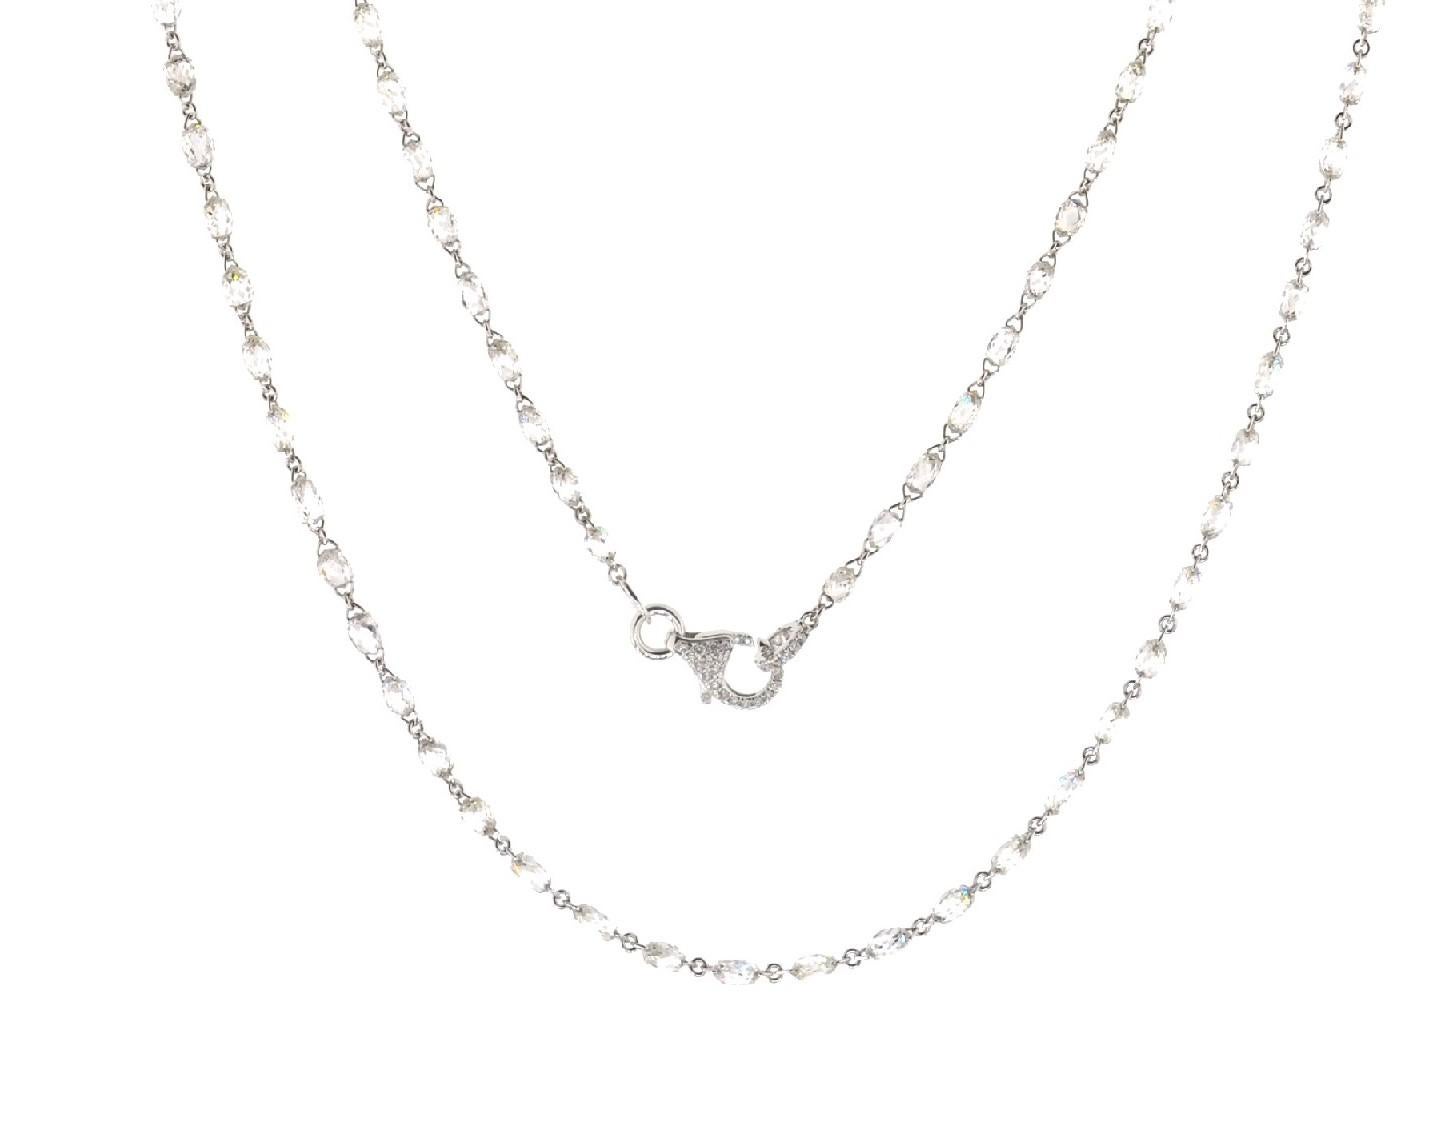 JR 27,51 Karat weißer Diamant Briolette Halskette

Die Halskette mit 148 weißen Diamanten Briolette, insgesamt Diamant Gewicht ist 27,51 Karat. Die Schließe ist speziell mit Pave-Diamanten besetzt. Es kann lang getragen oder zweimal um den Hals